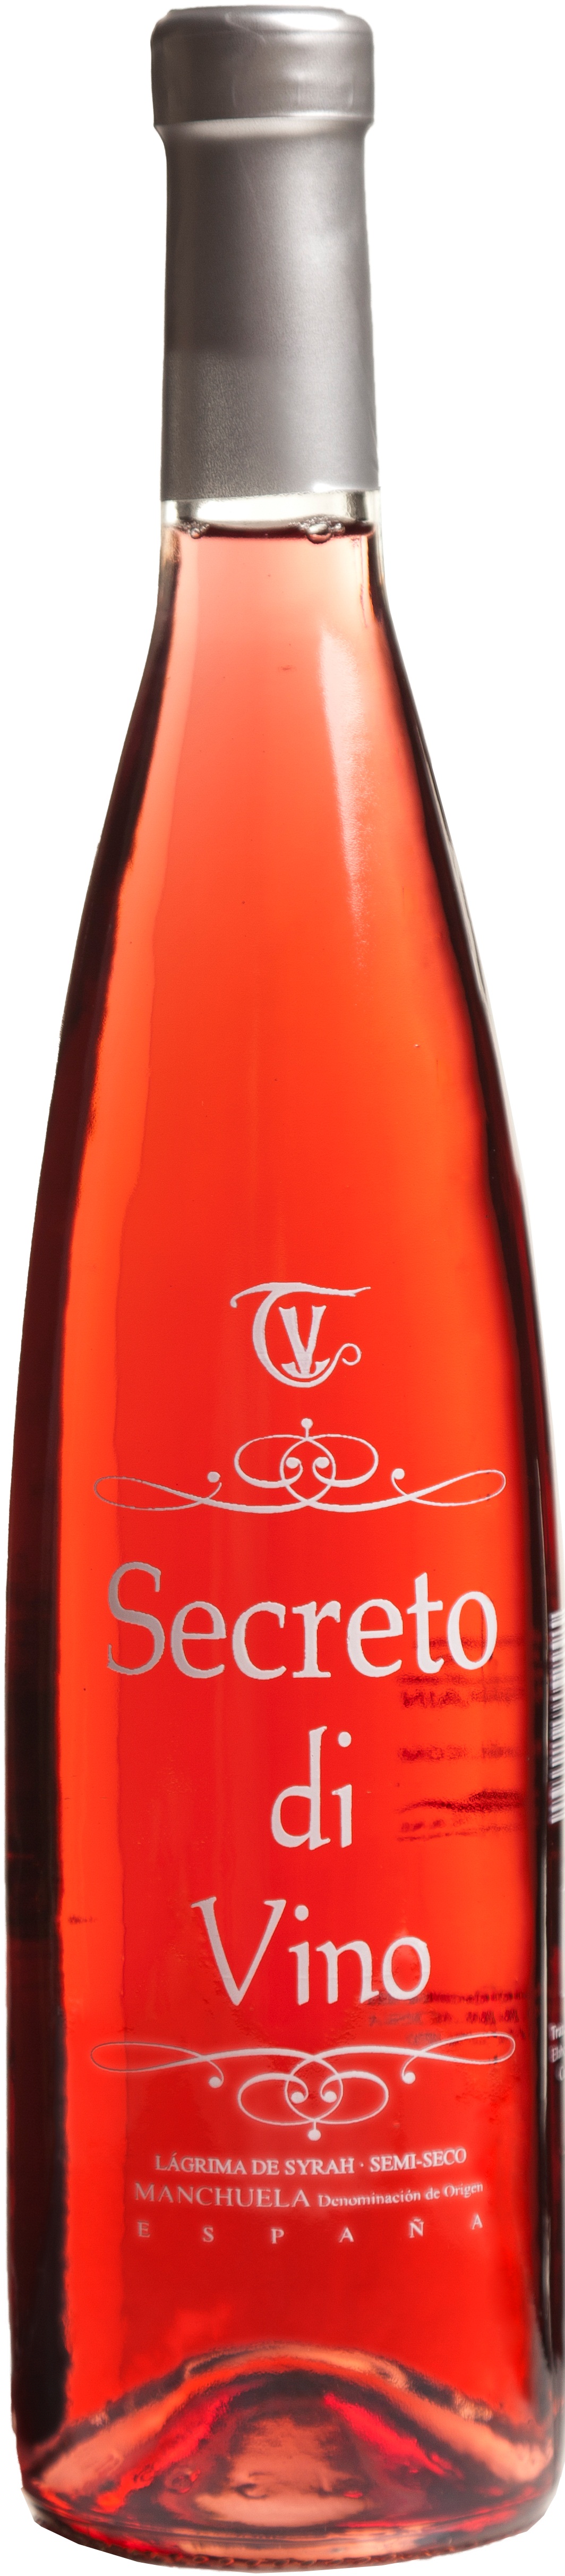 Logo Wein Secreto Di Vino Rosado – Lágrima De Syrah